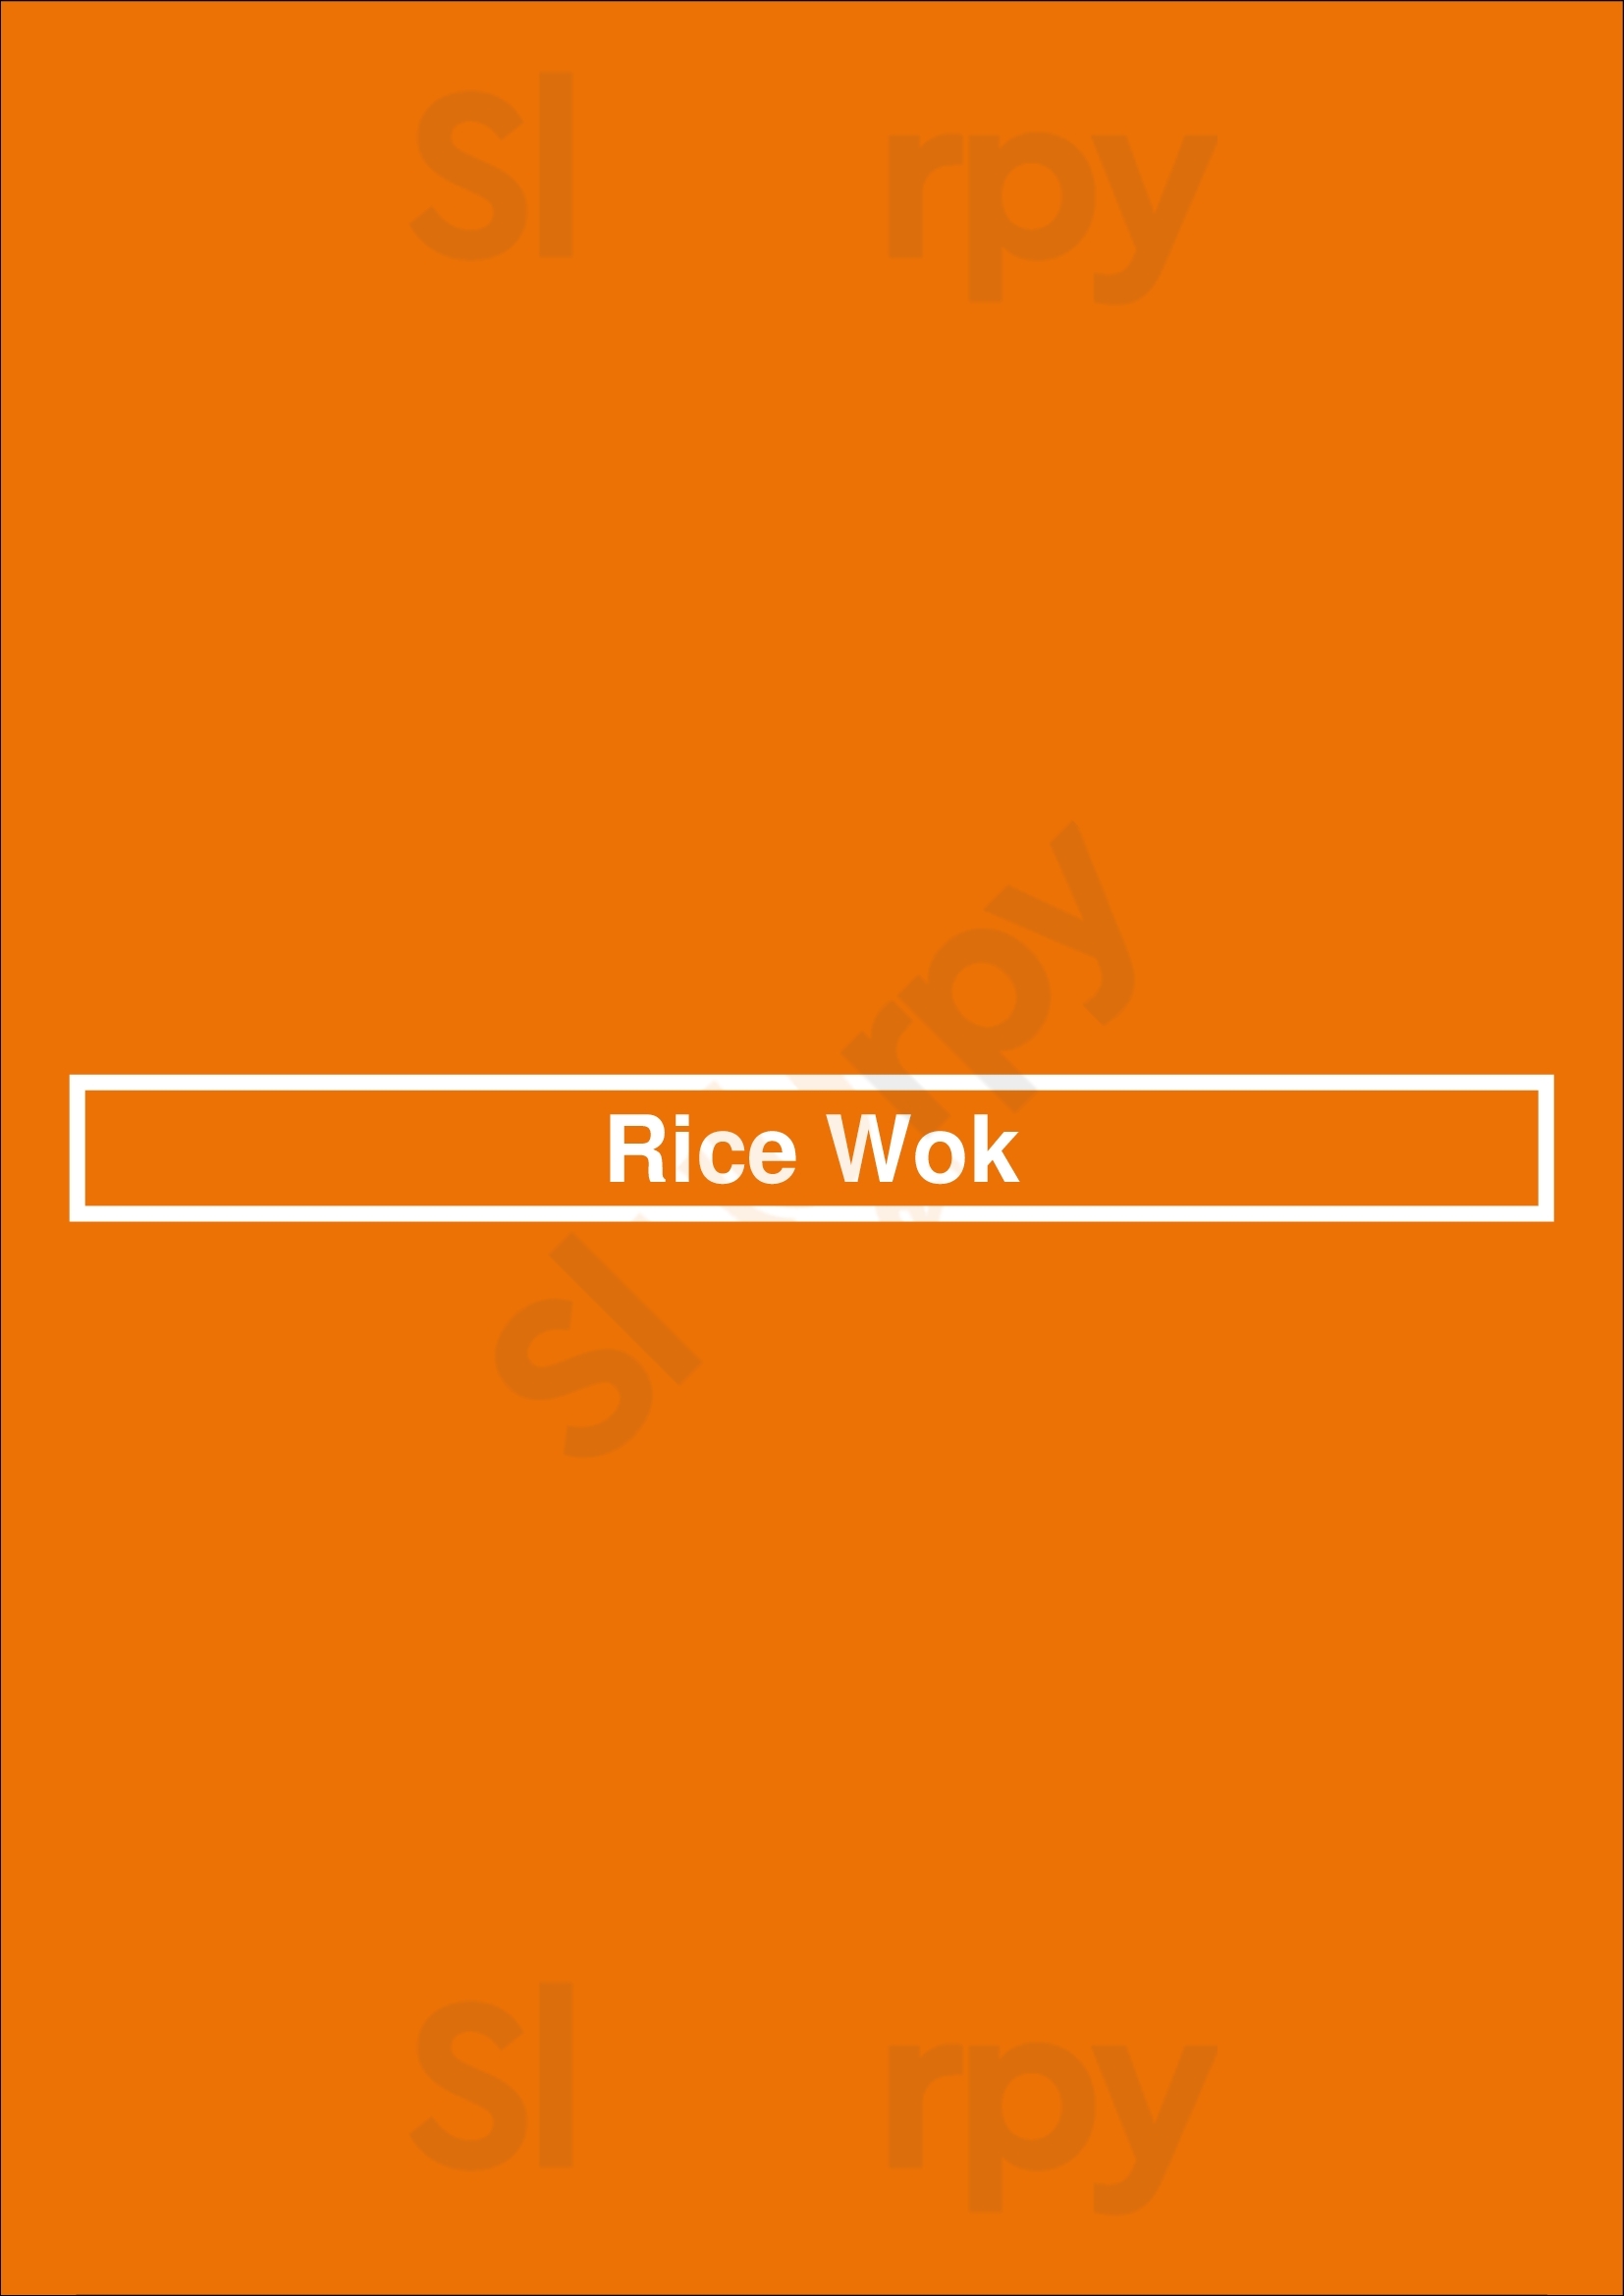 Rice Wok Orem Menu - 1